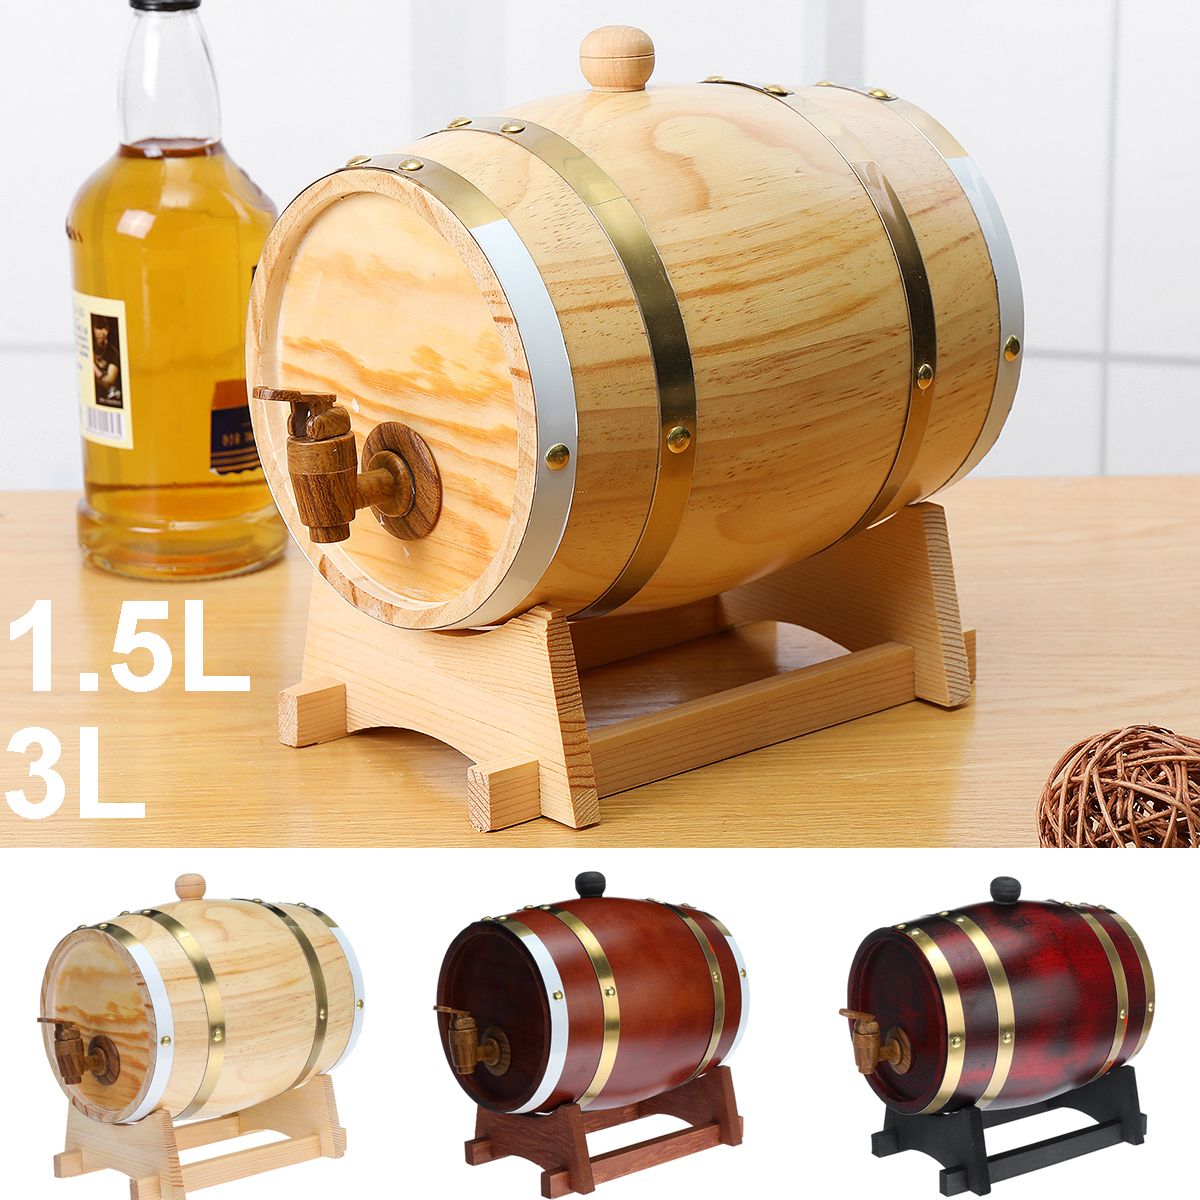 153L-Wood-Barrel-Oak-Brewing-Vintage-Keg-Wines-Whiskey-Home-Storage-Holder-1744767